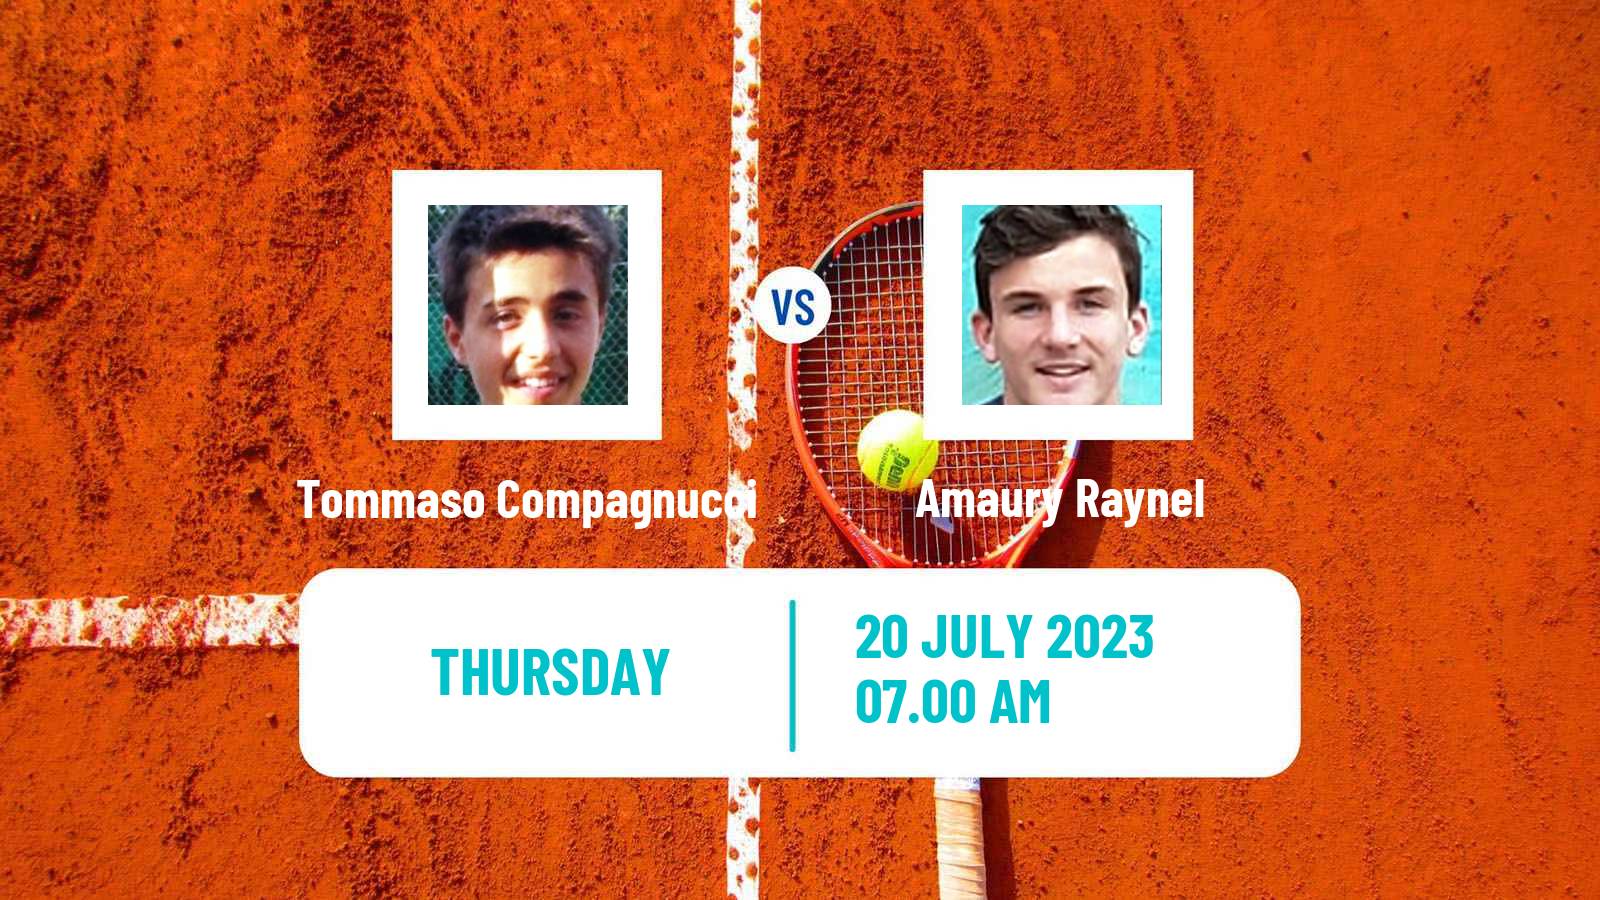 Tennis ITF M25 Esch Alzette 2 Men Tommaso Compagnucci - Amaury Raynel